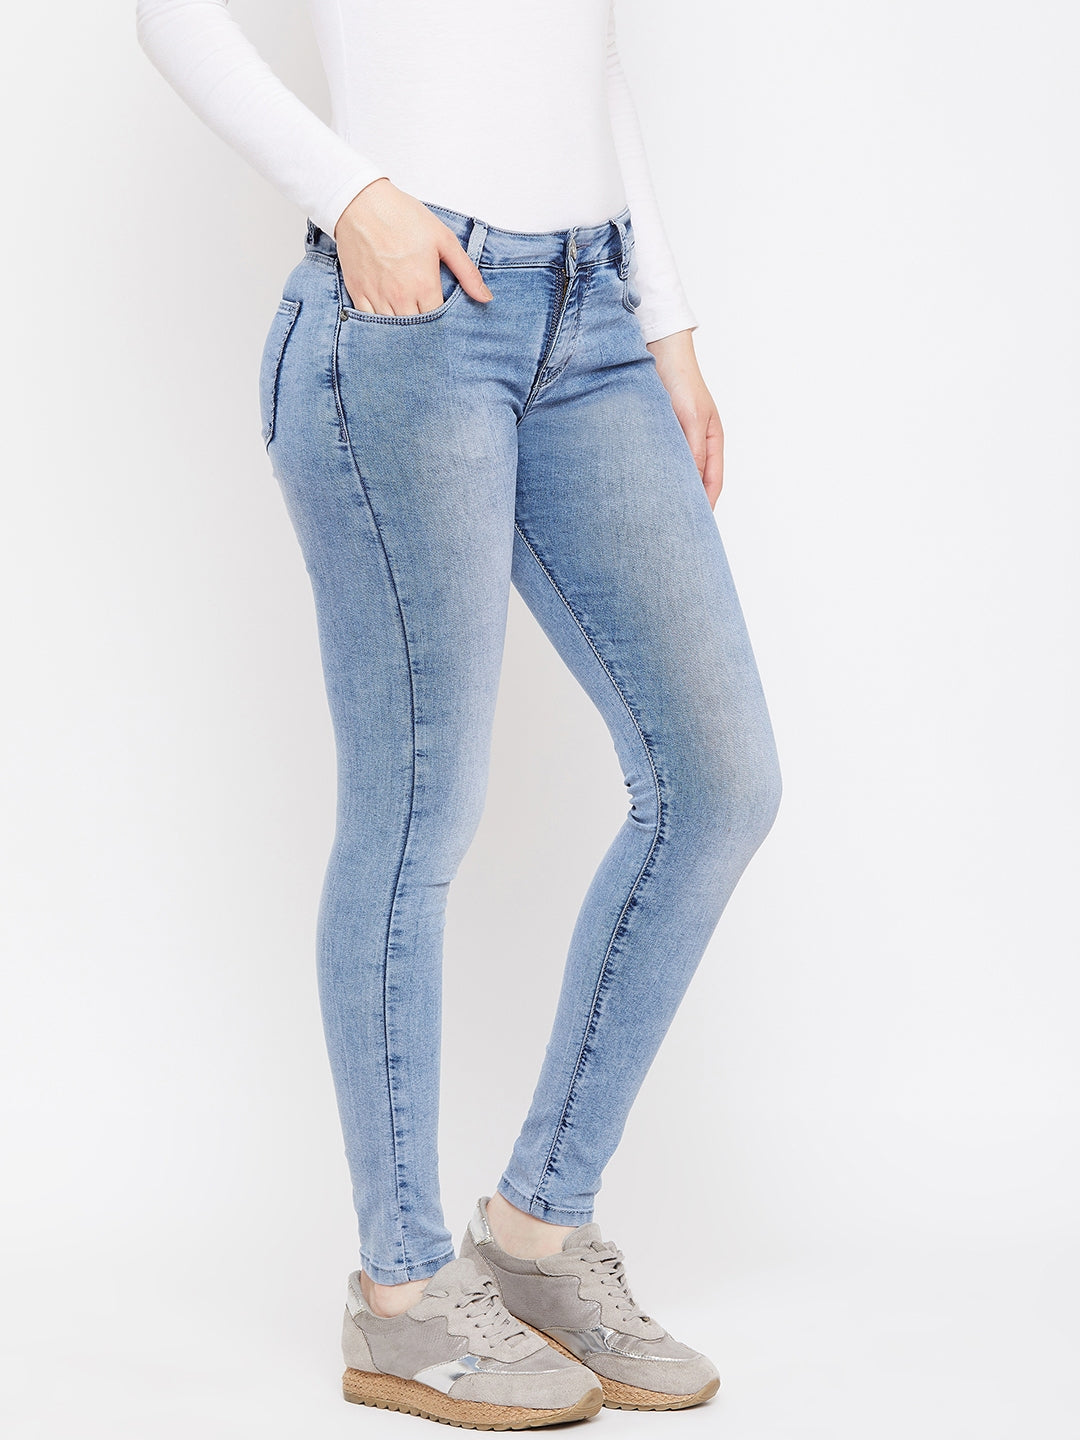 Cropped Denim - Women Jeans